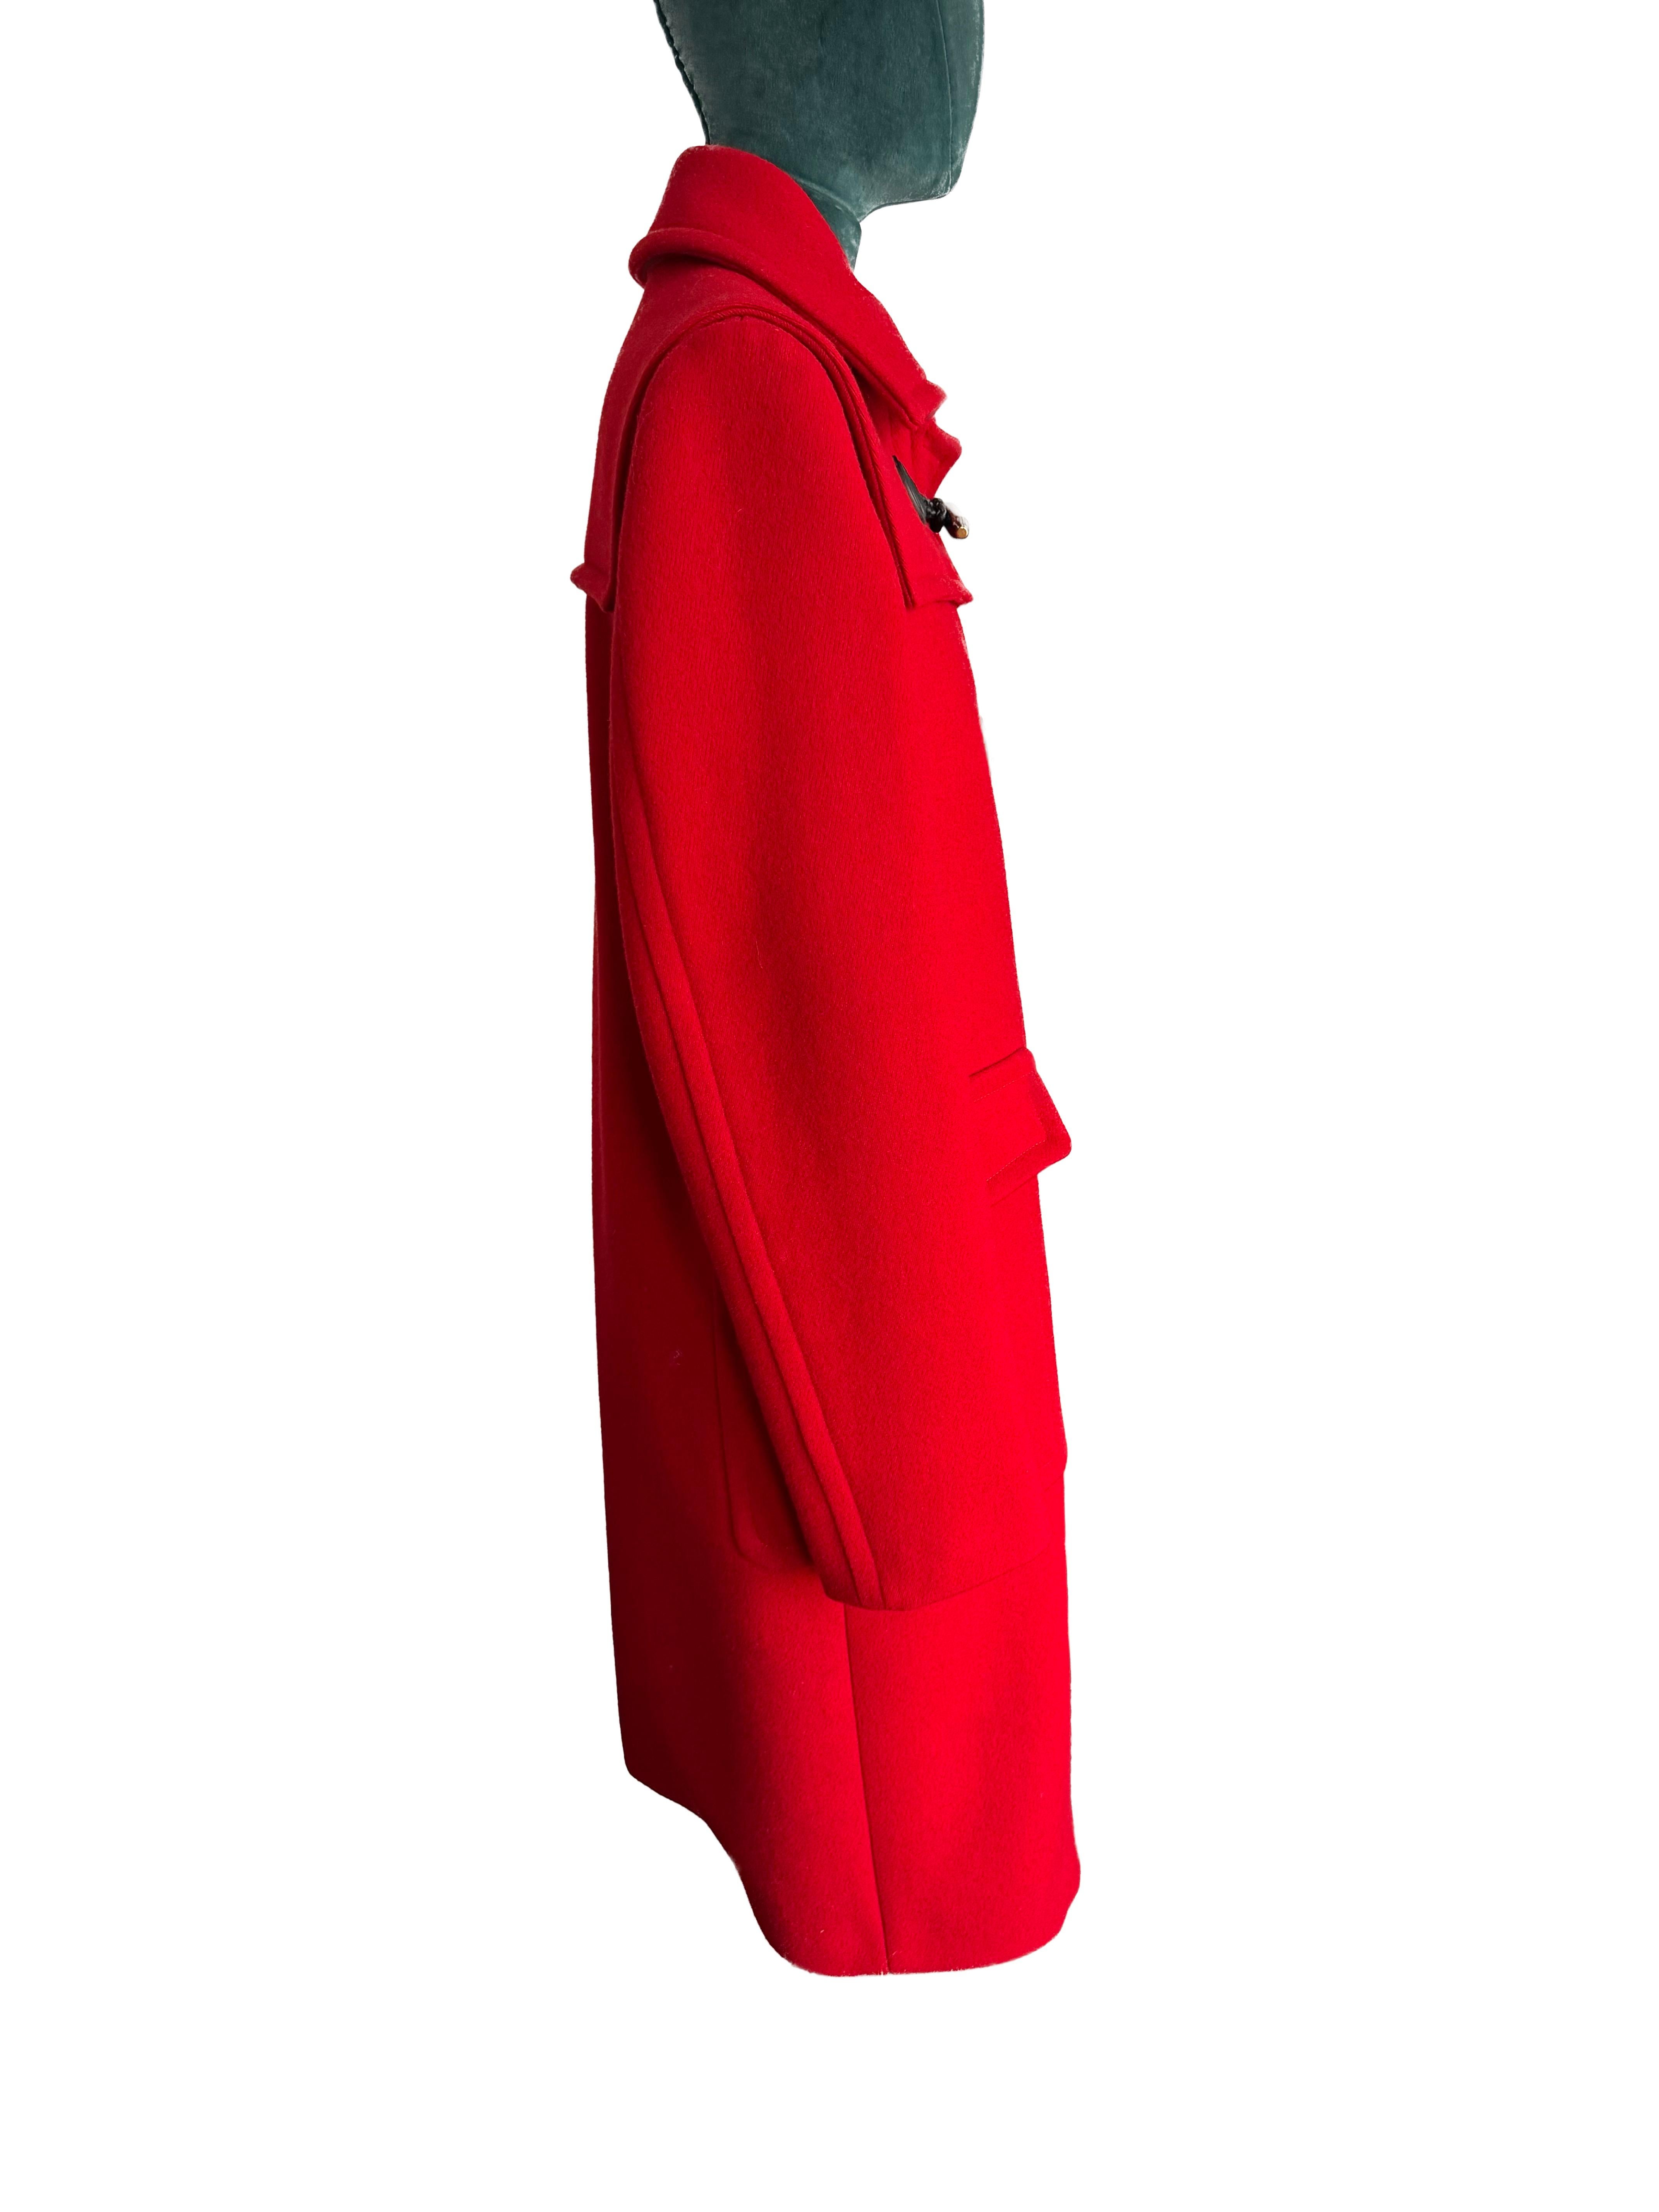 Betreten Sie mit dem exquisiten Gucci Red Ruffle Duffle Coat ein Reich von dauerhaftem Stil und raffiniertem Luxus. Dieses zeitlose Stück geht über die Mode hinaus und verkörpert die Essenz von Raffinesse und sorgfältiger Handwerkskunst. Der Mantel